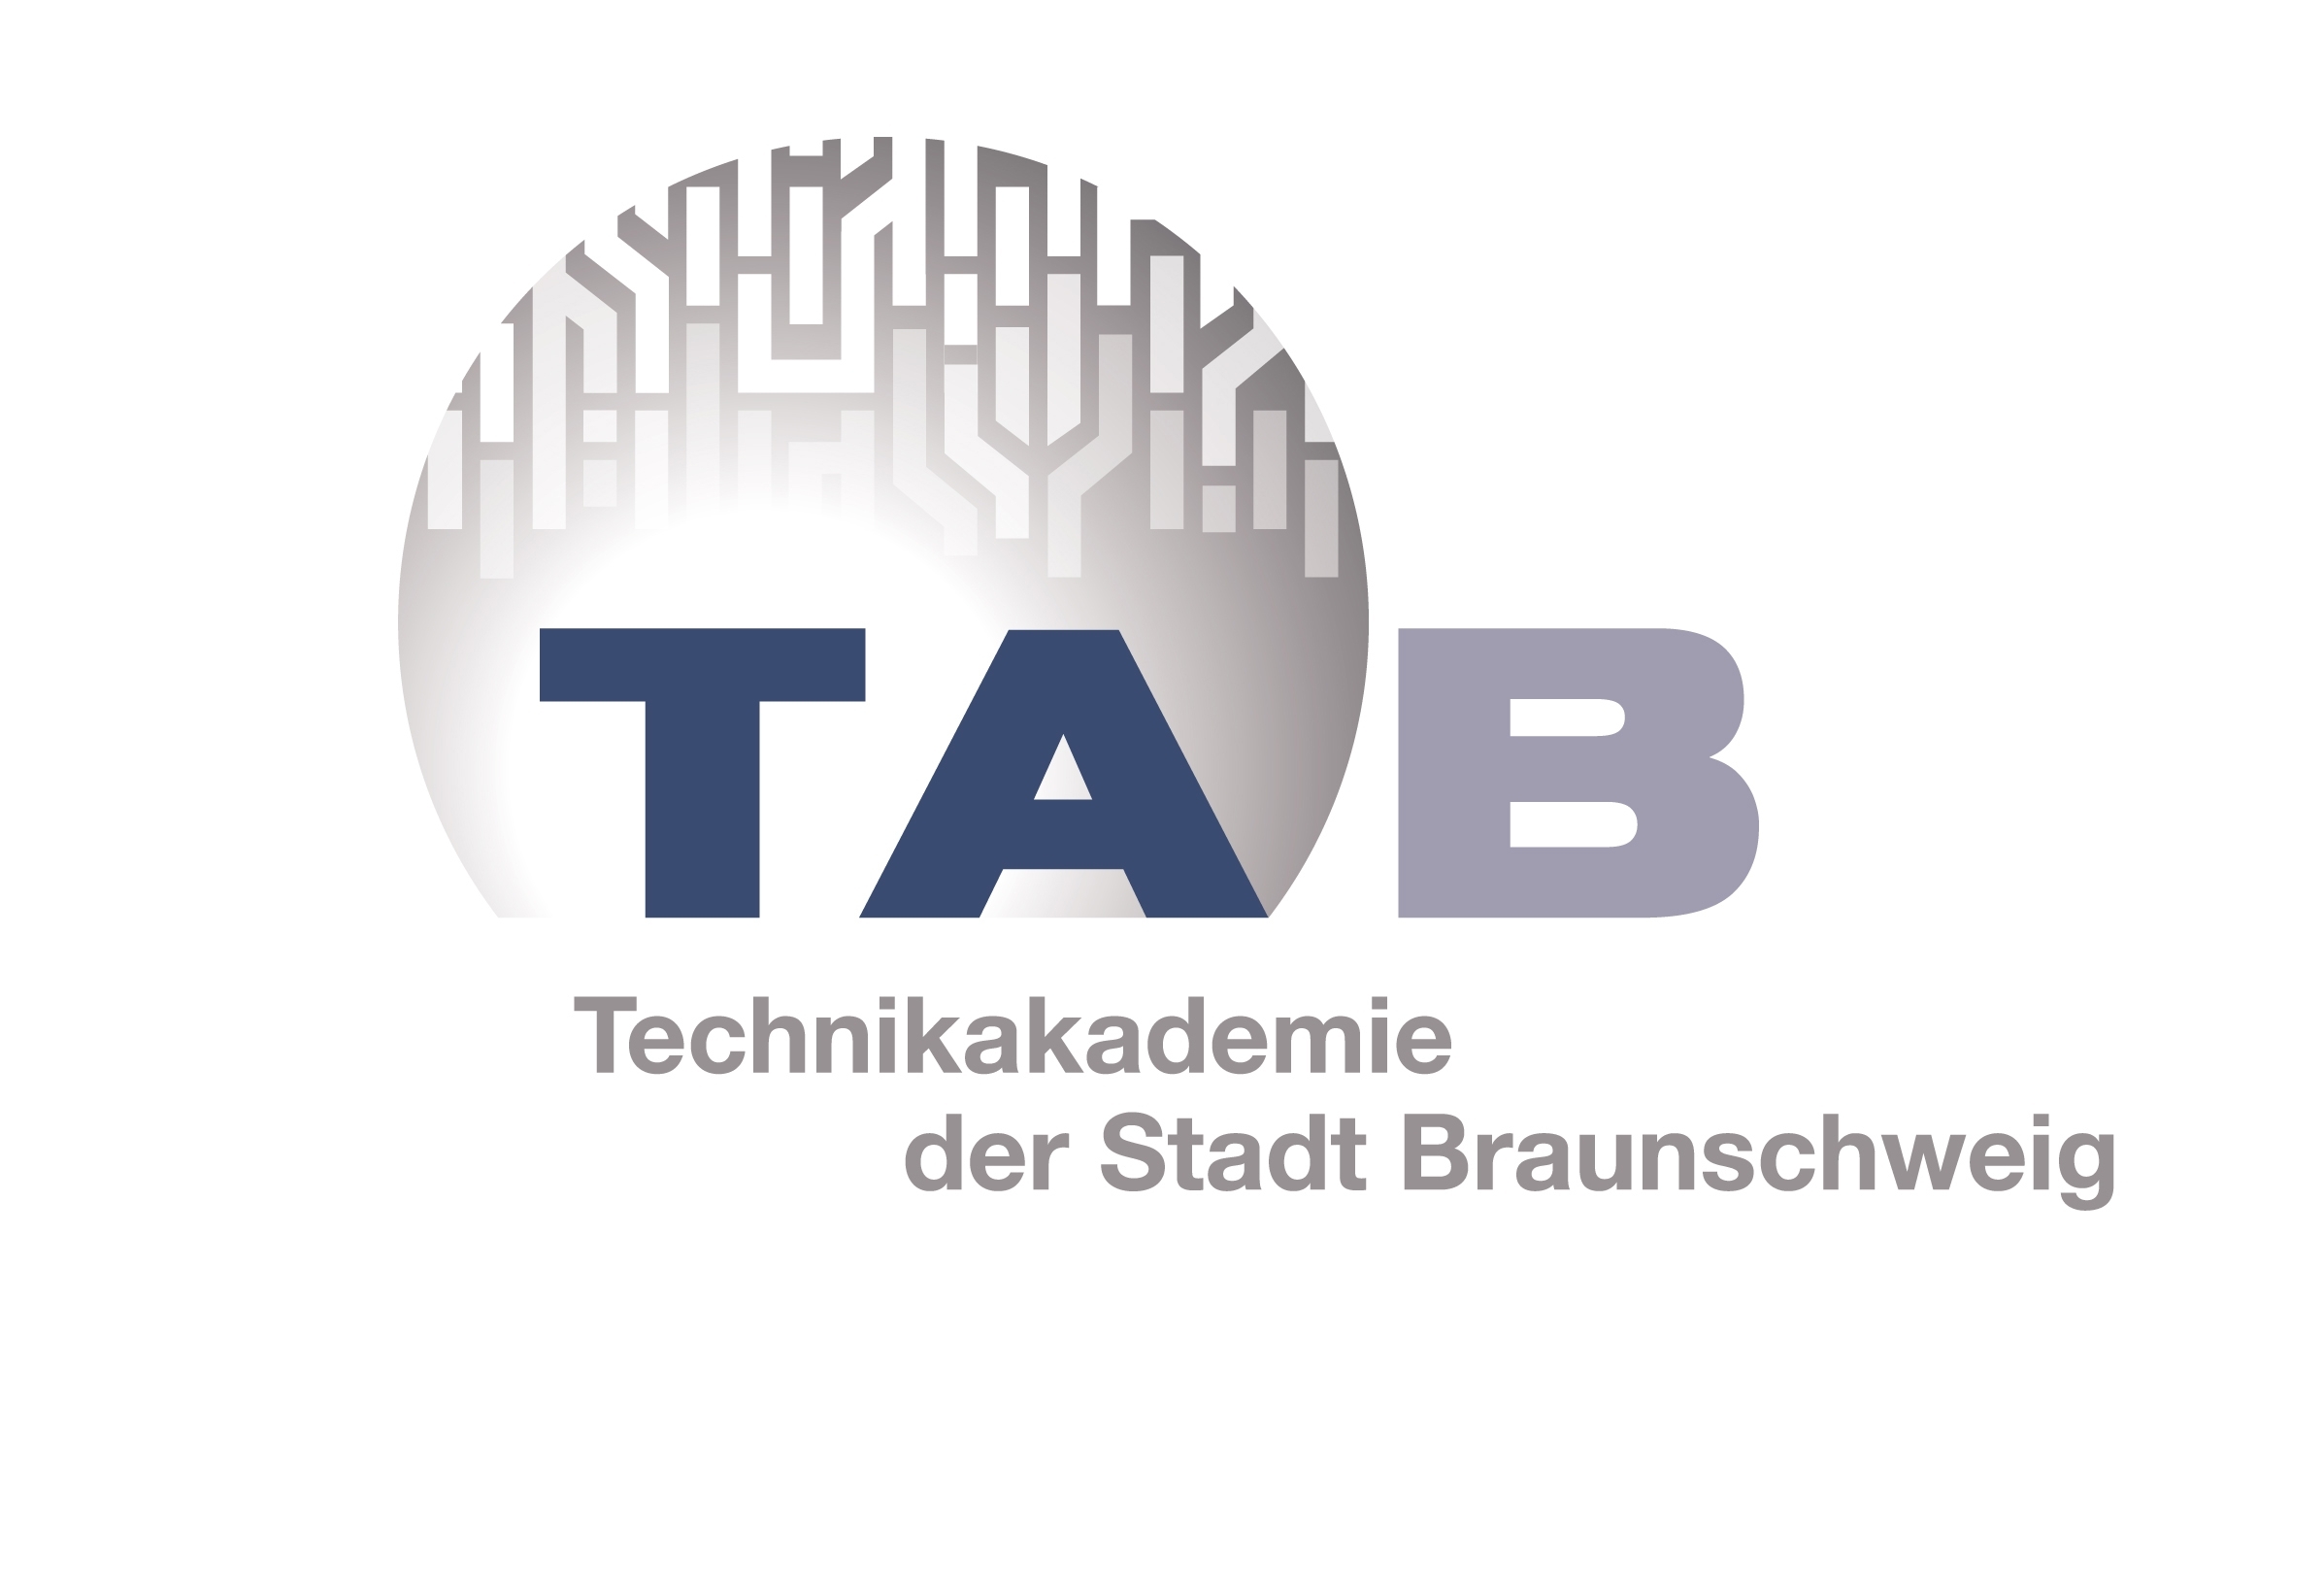 Technikakademie der Stadt Braunschweig